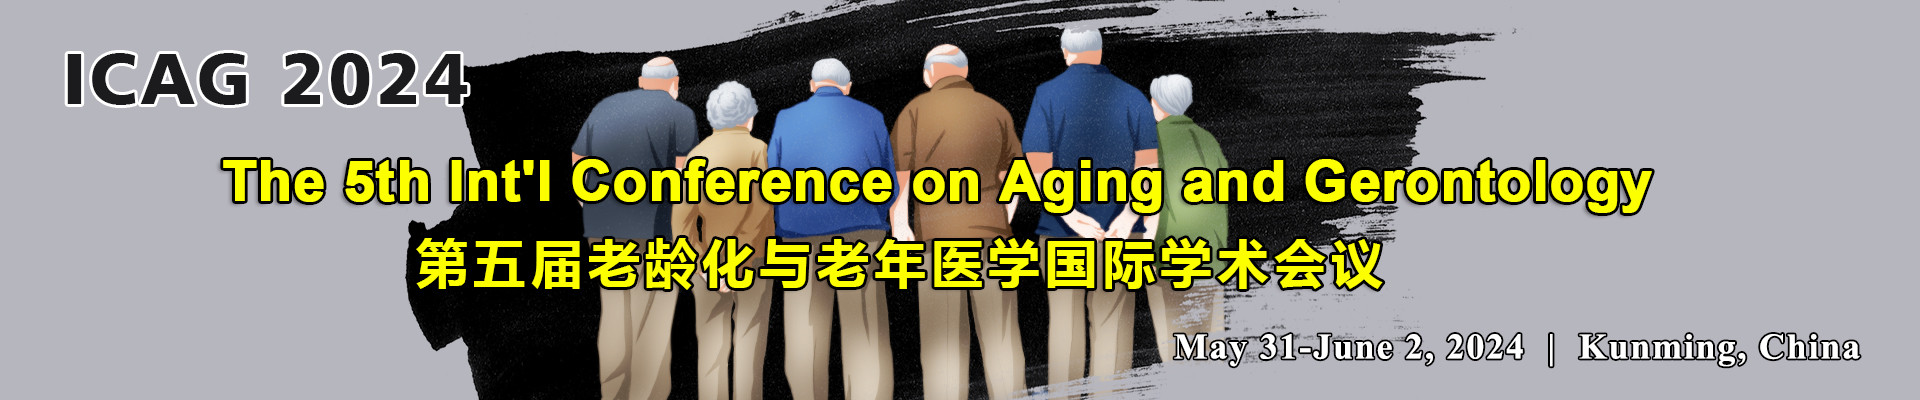 第五届老龄化与老年医学国际学术会议（ICAG 2024）